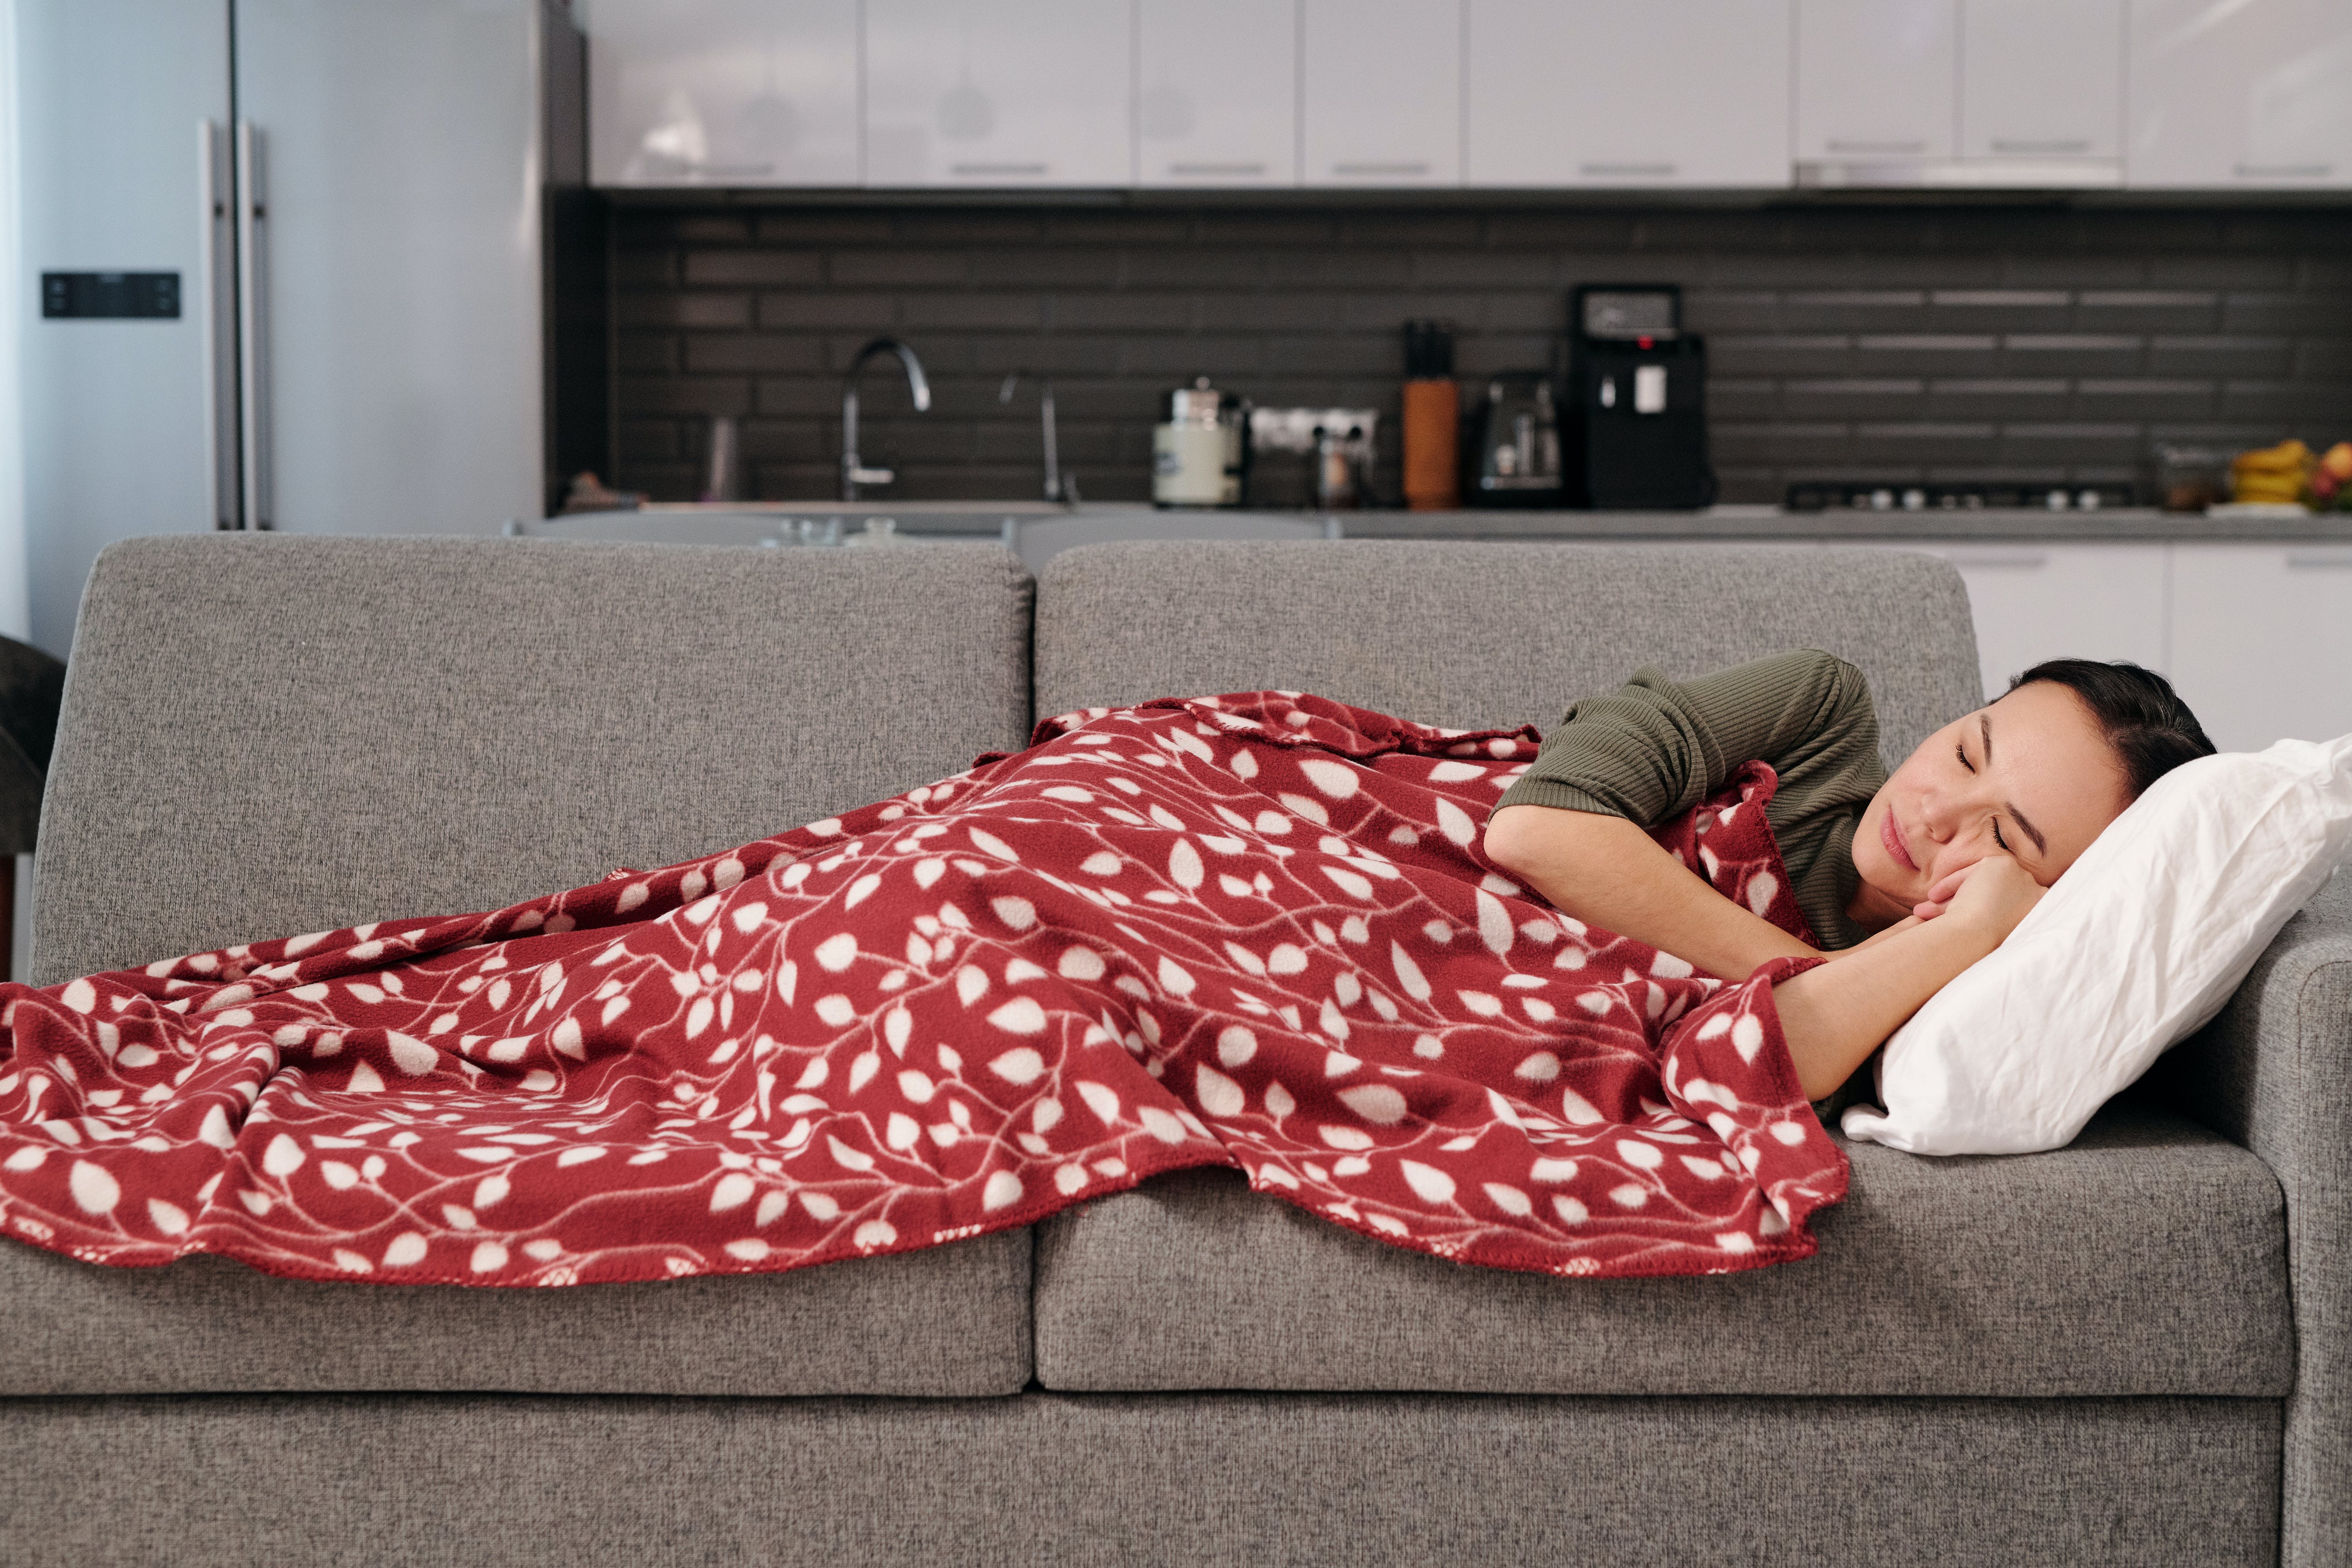 Schlafende Frau auf der Couch | Quelle: Pexels